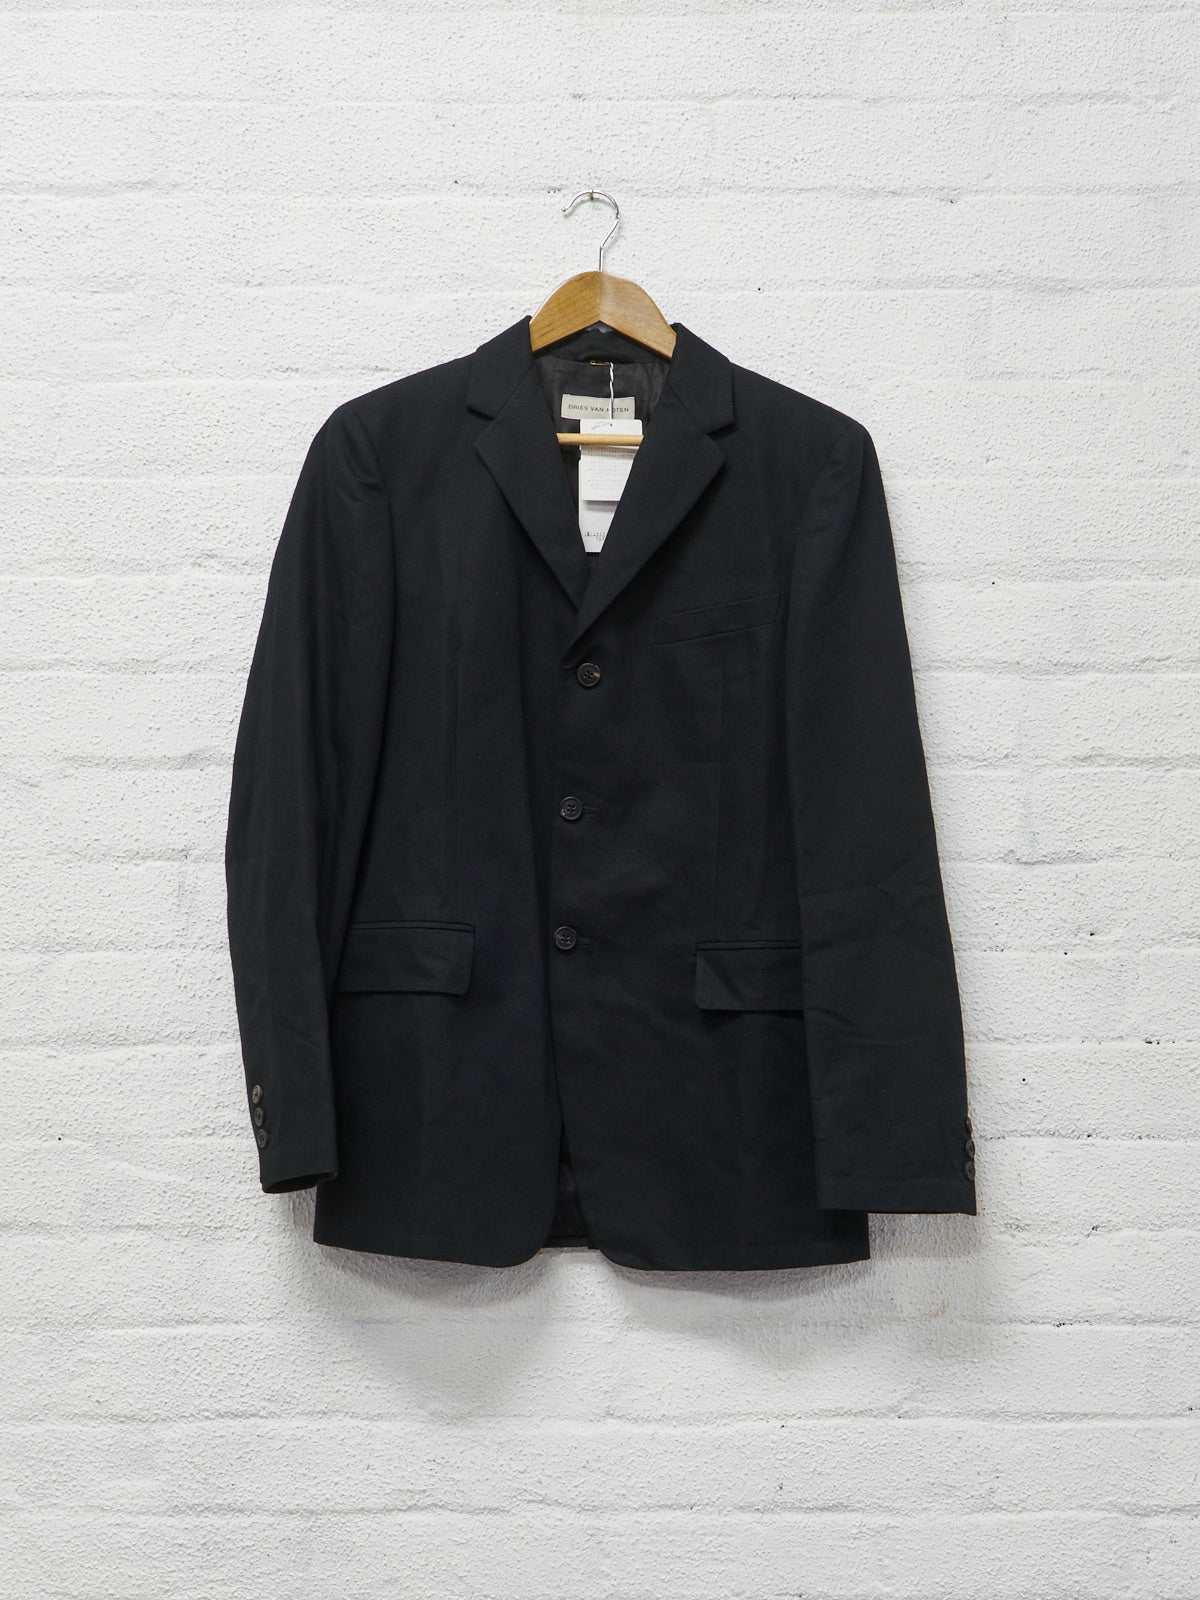 Dries Van Noten 2010 black cotton linen 3 button blazer - size 48 / S-M